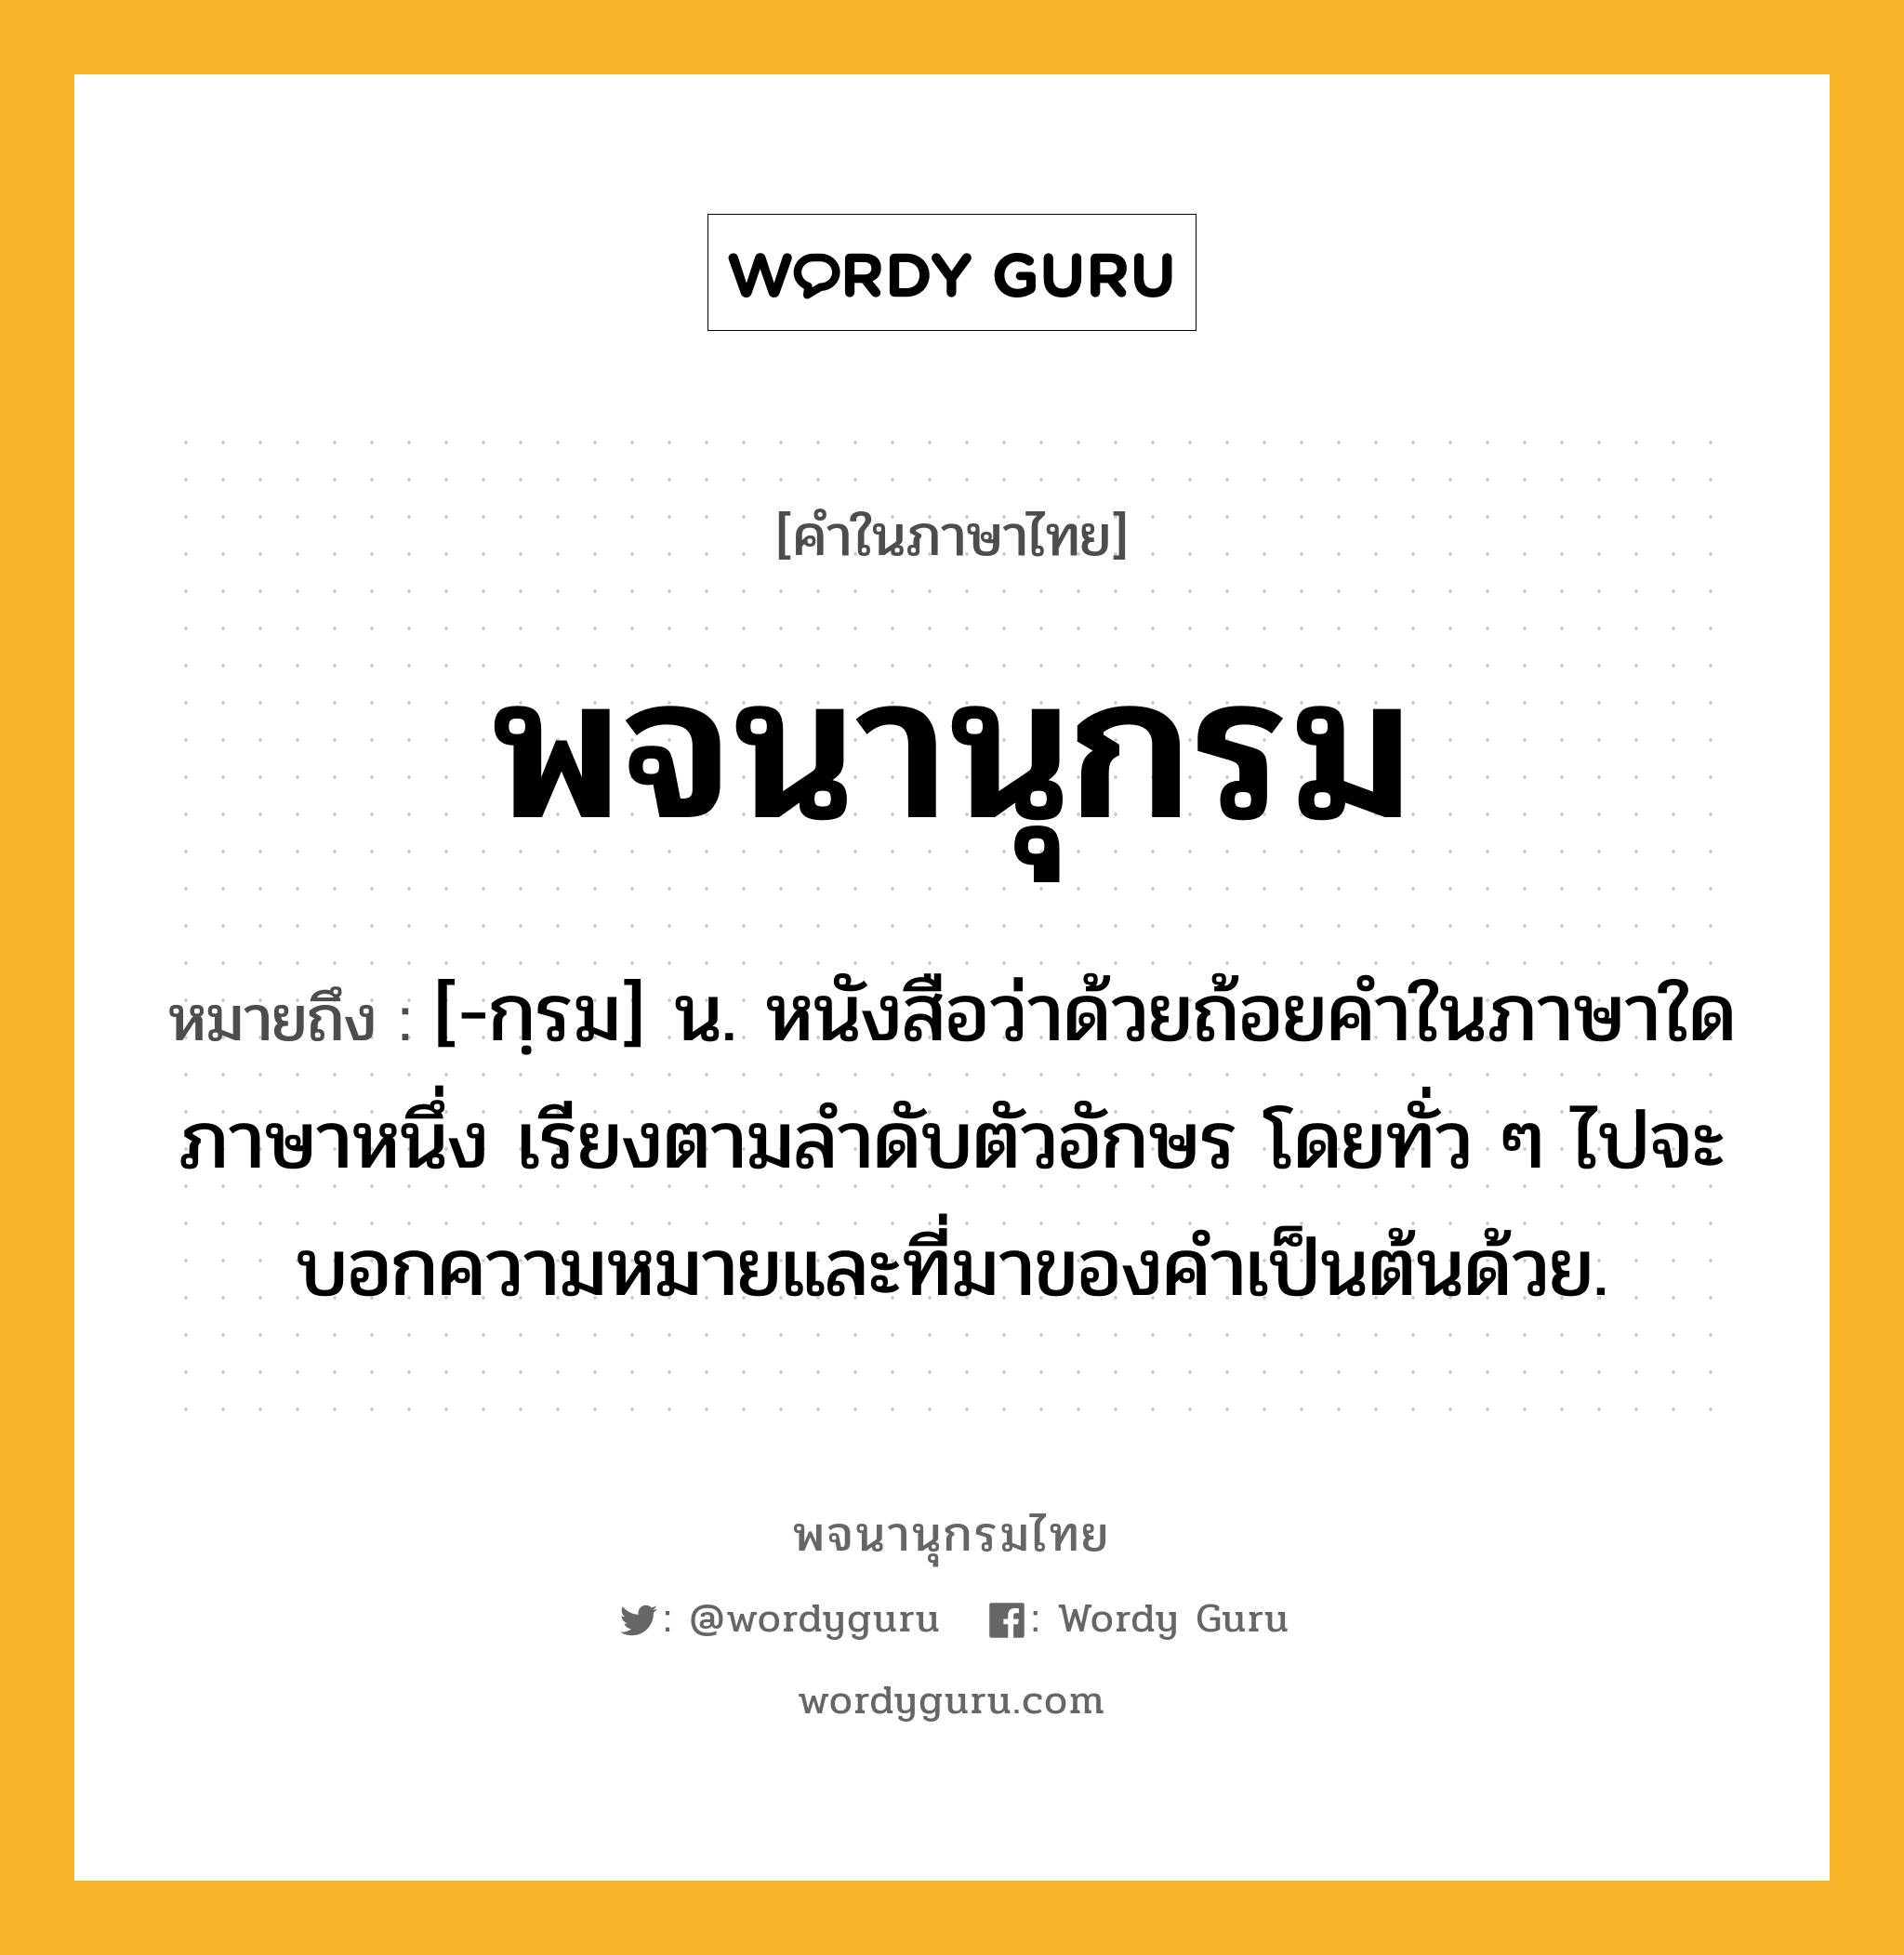 พจนานุกรม ความหมาย หมายถึงอะไร?, คำในภาษาไทย พจนานุกรม หมายถึง [-กฺรม] น. หนังสือว่าด้วยถ้อยคำในภาษาใดภาษาหนึ่ง เรียงตามลำดับตัวอักษร โดยทั่ว ๆ ไปจะบอกความหมายและที่มาของคำเป็นต้นด้วย.